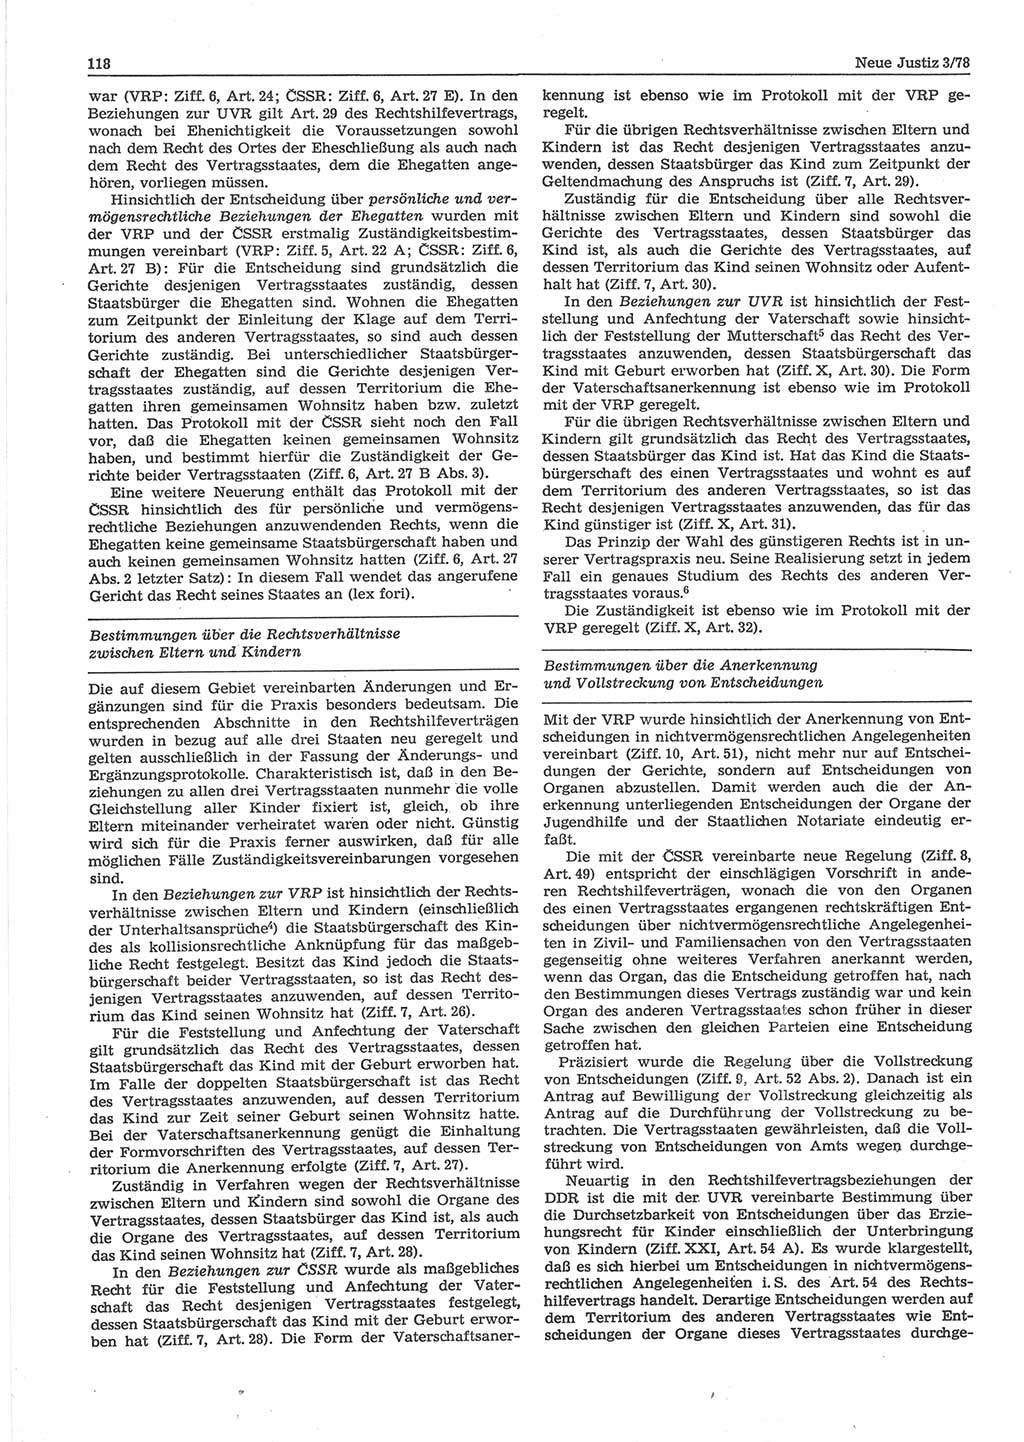 Neue Justiz (NJ), Zeitschrift für sozialistisches Recht und Gesetzlichkeit [Deutsche Demokratische Republik (DDR)], 32. Jahrgang 1978, Seite 118 (NJ DDR 1978, S. 118)